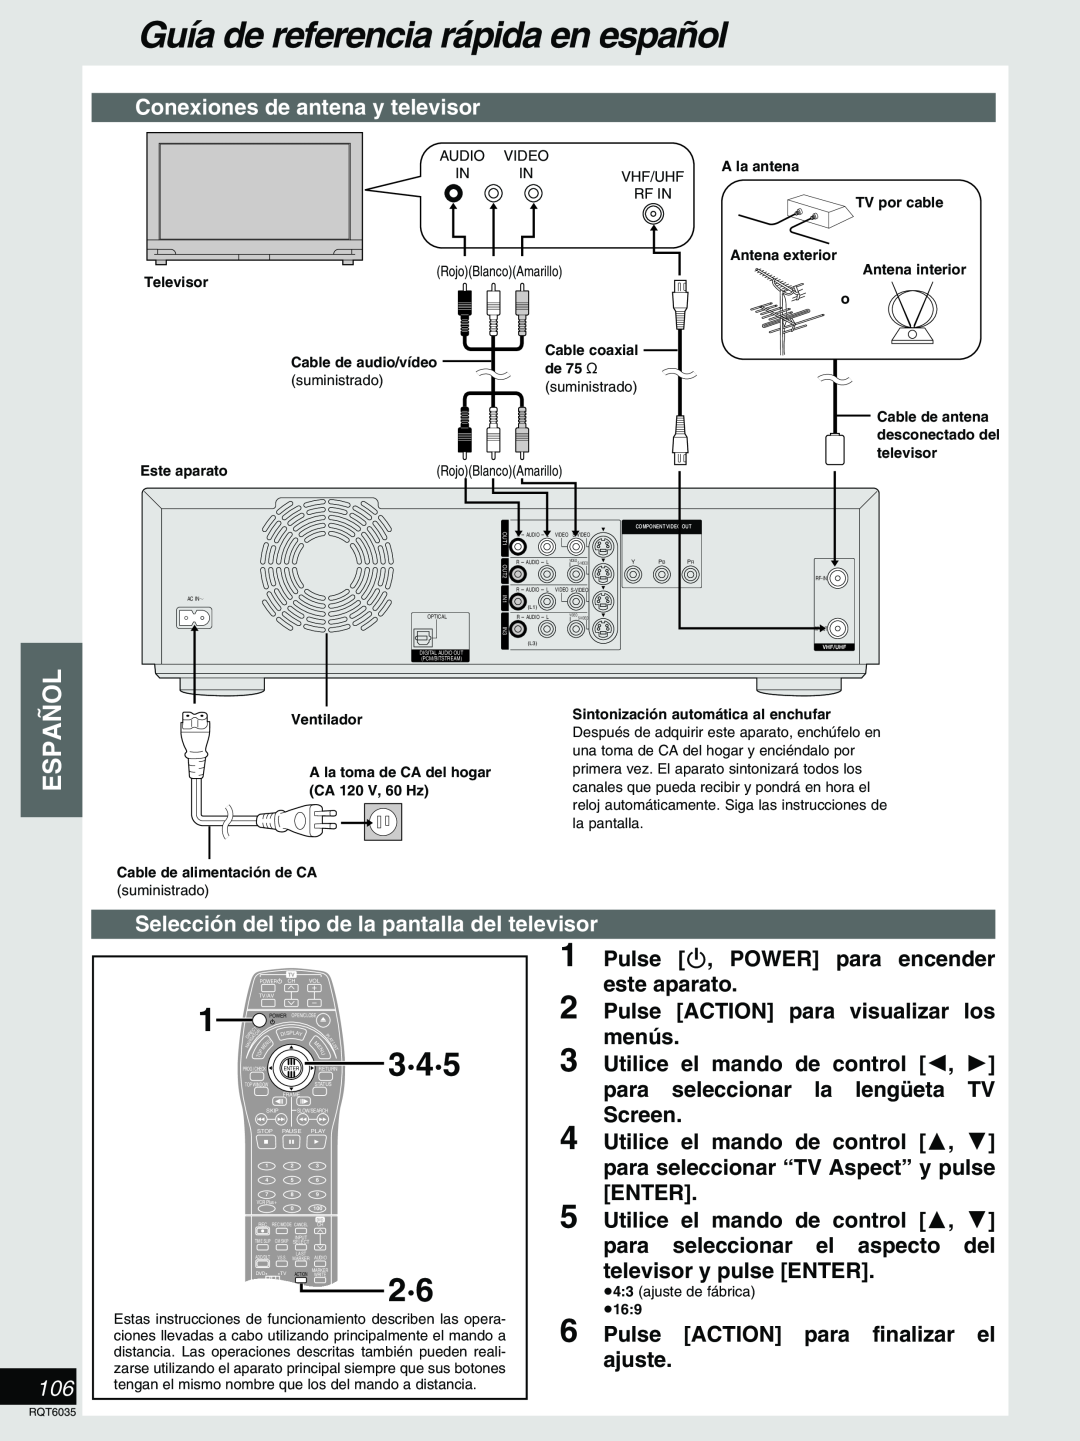 Panasonic DMR-E20 warranty 3·4·5, Guía de referencia rápida en español, Español, Conexiones de antena y televisor 